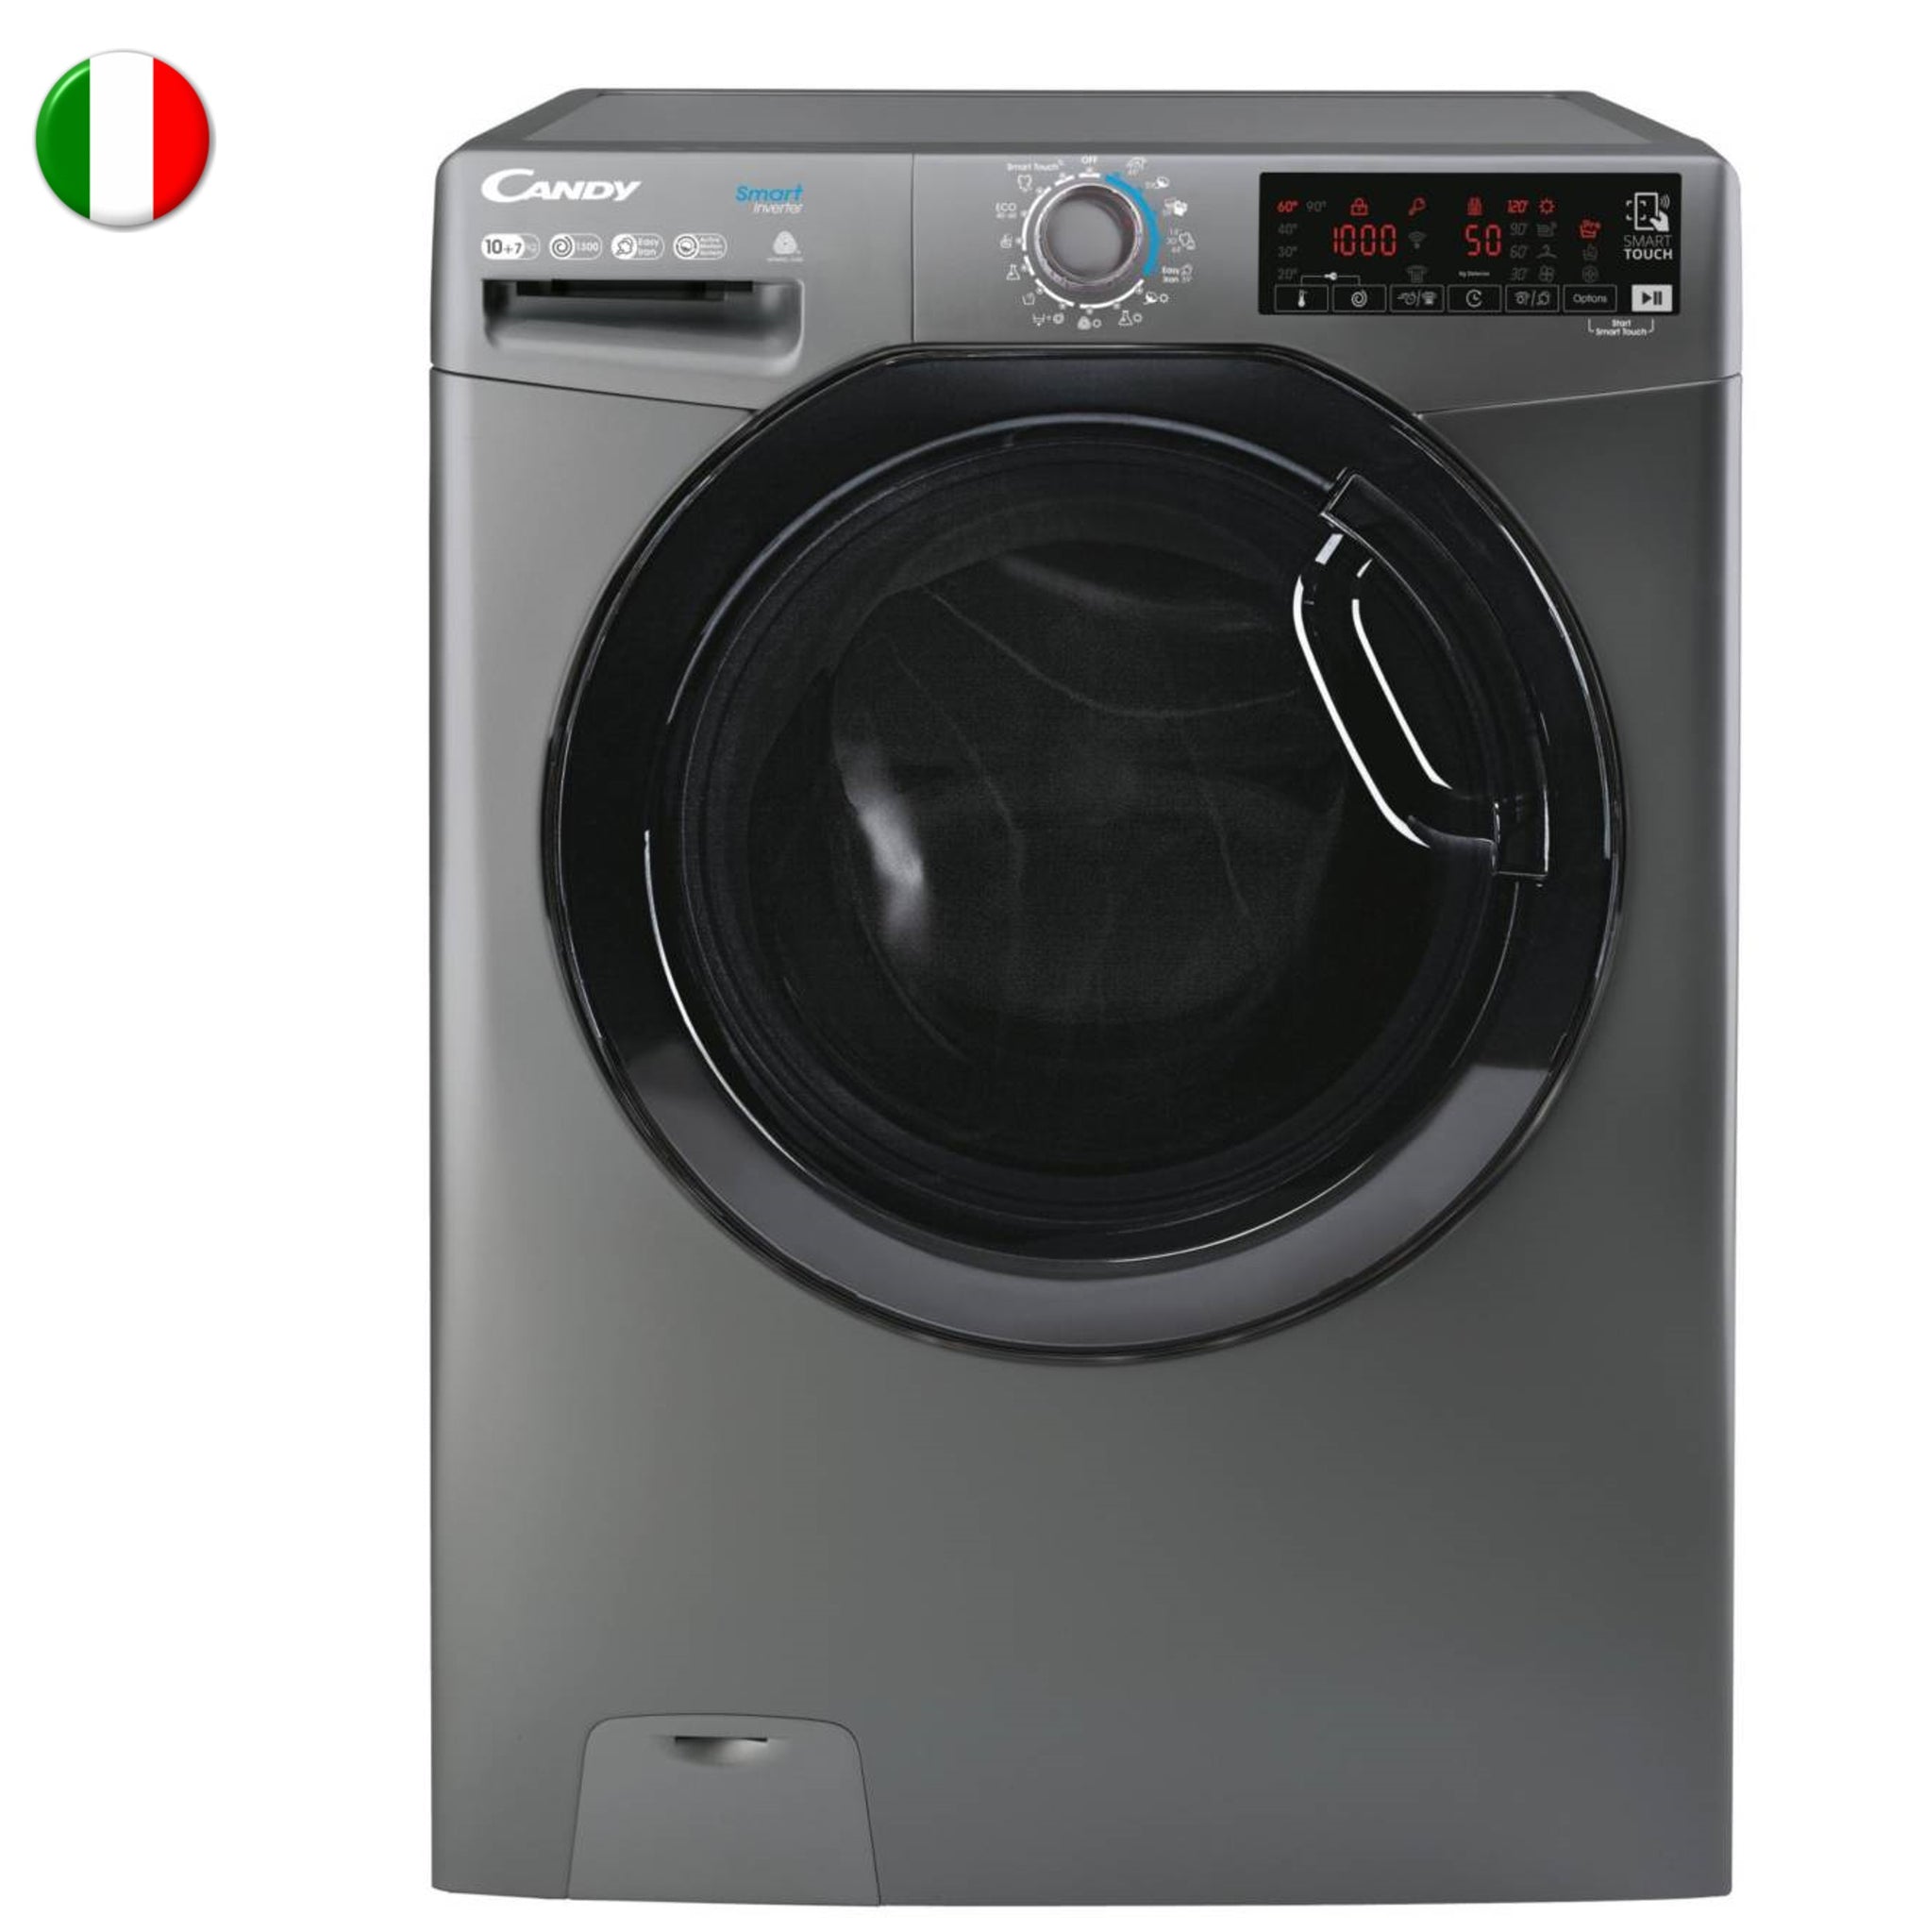 Oferta : lavadora secadora Candy por 354 euros